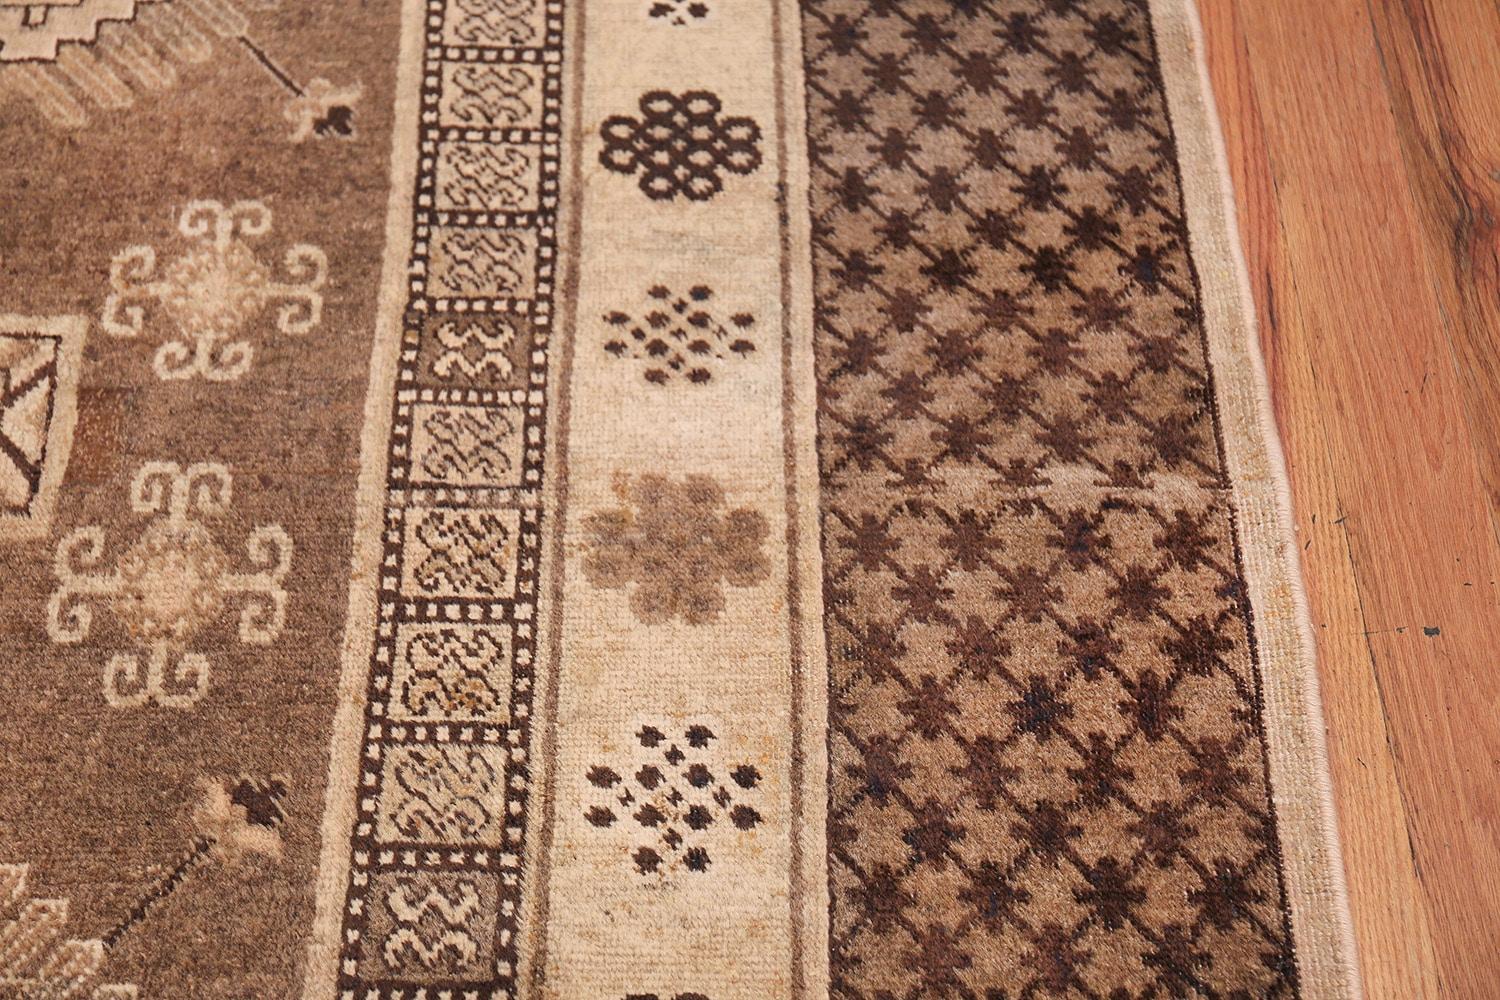 Schöner und dekorativer orientalischer antiker Khotan-Teppich, Herkunftsland: Ostturkestan, CIRCA-Datum: 1910s. Größe: 2,01 m x 3,53 m (6 ft 7 in x 11 ft 7 in)

